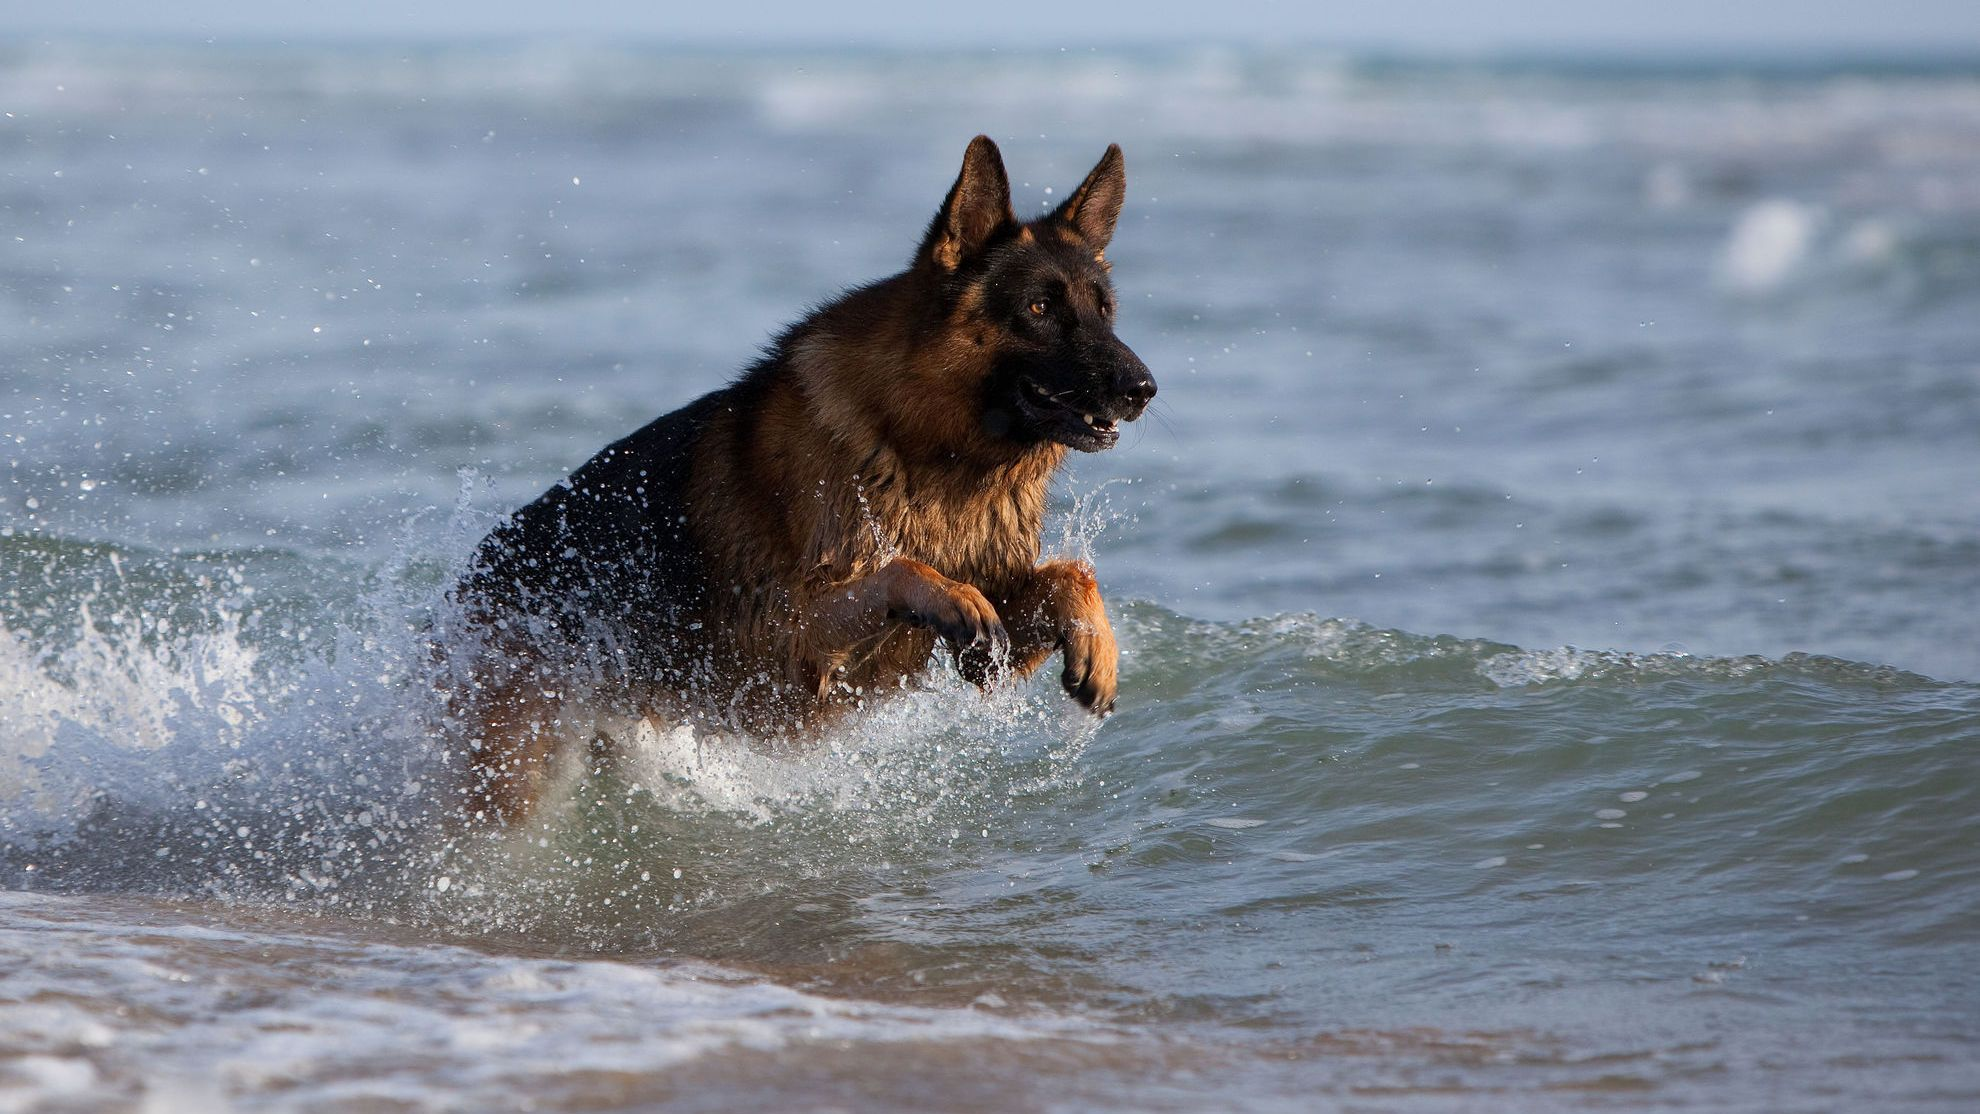 German Shepherd playing in the sea, splashing water around